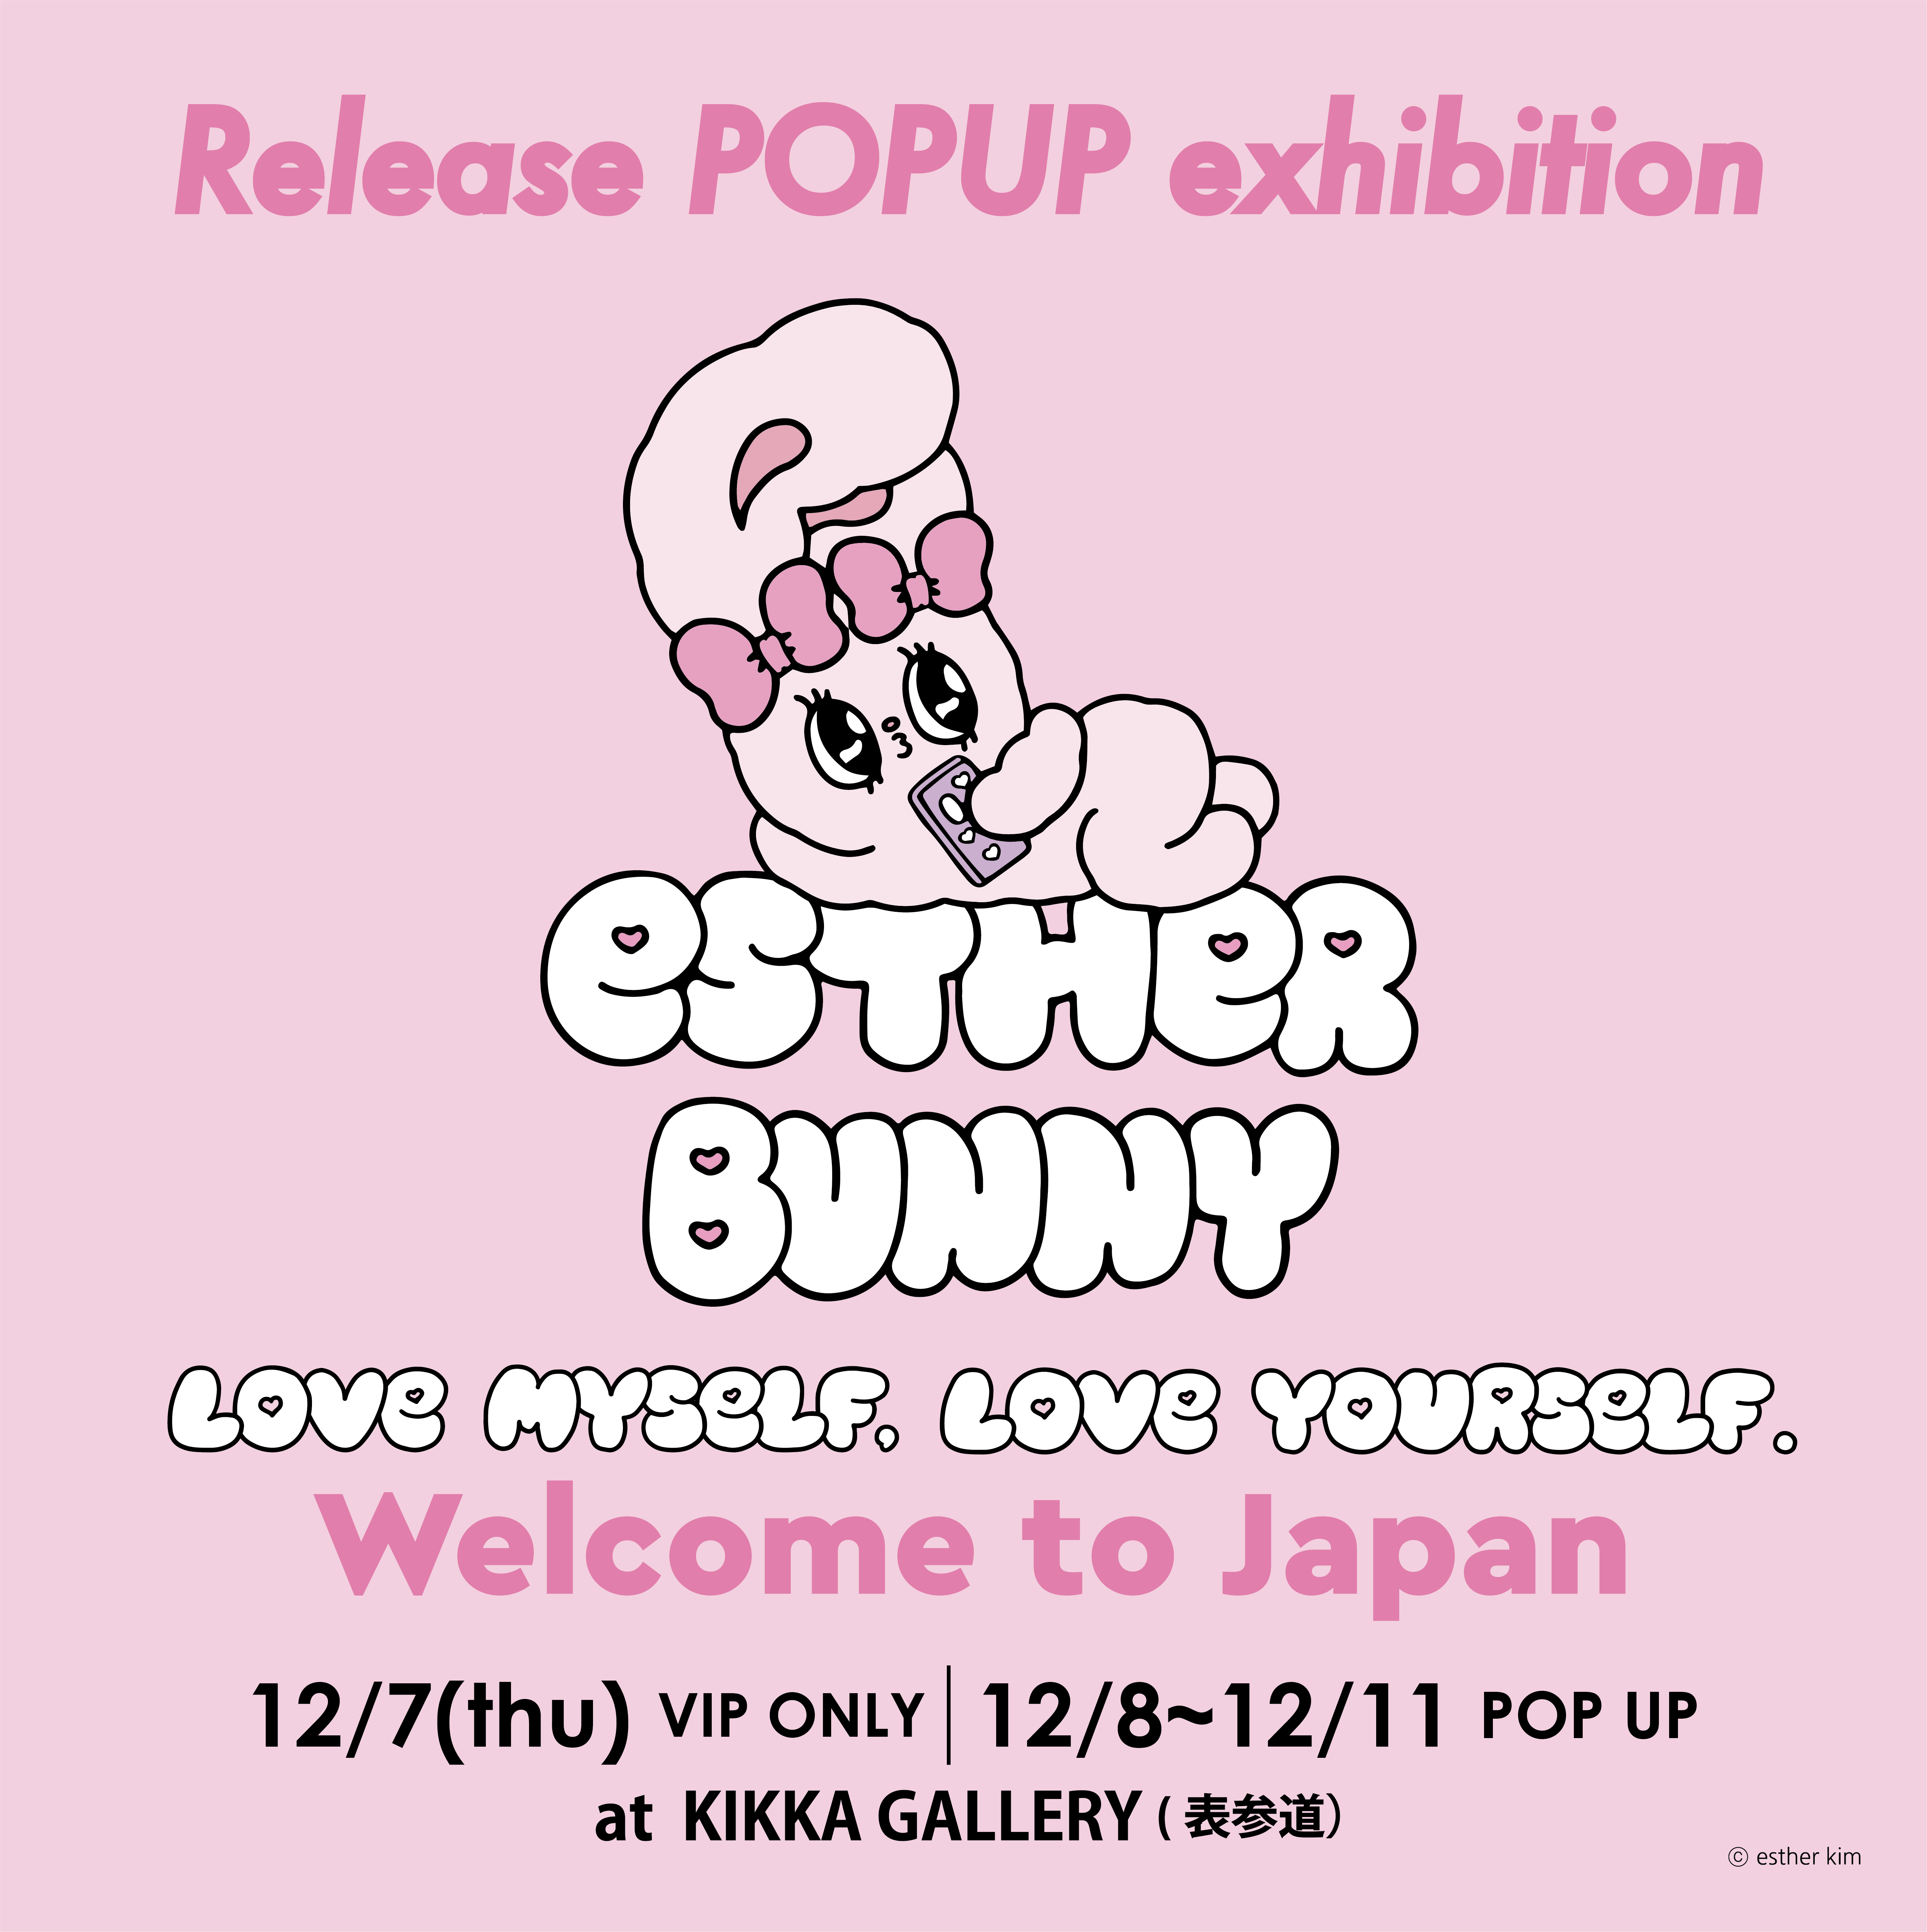 韓国と世界で人気のキャラクターEsther Bunny(エスターバニー) 
日本初のRelease POP UP Exhibitionを表参道で開催決定！！